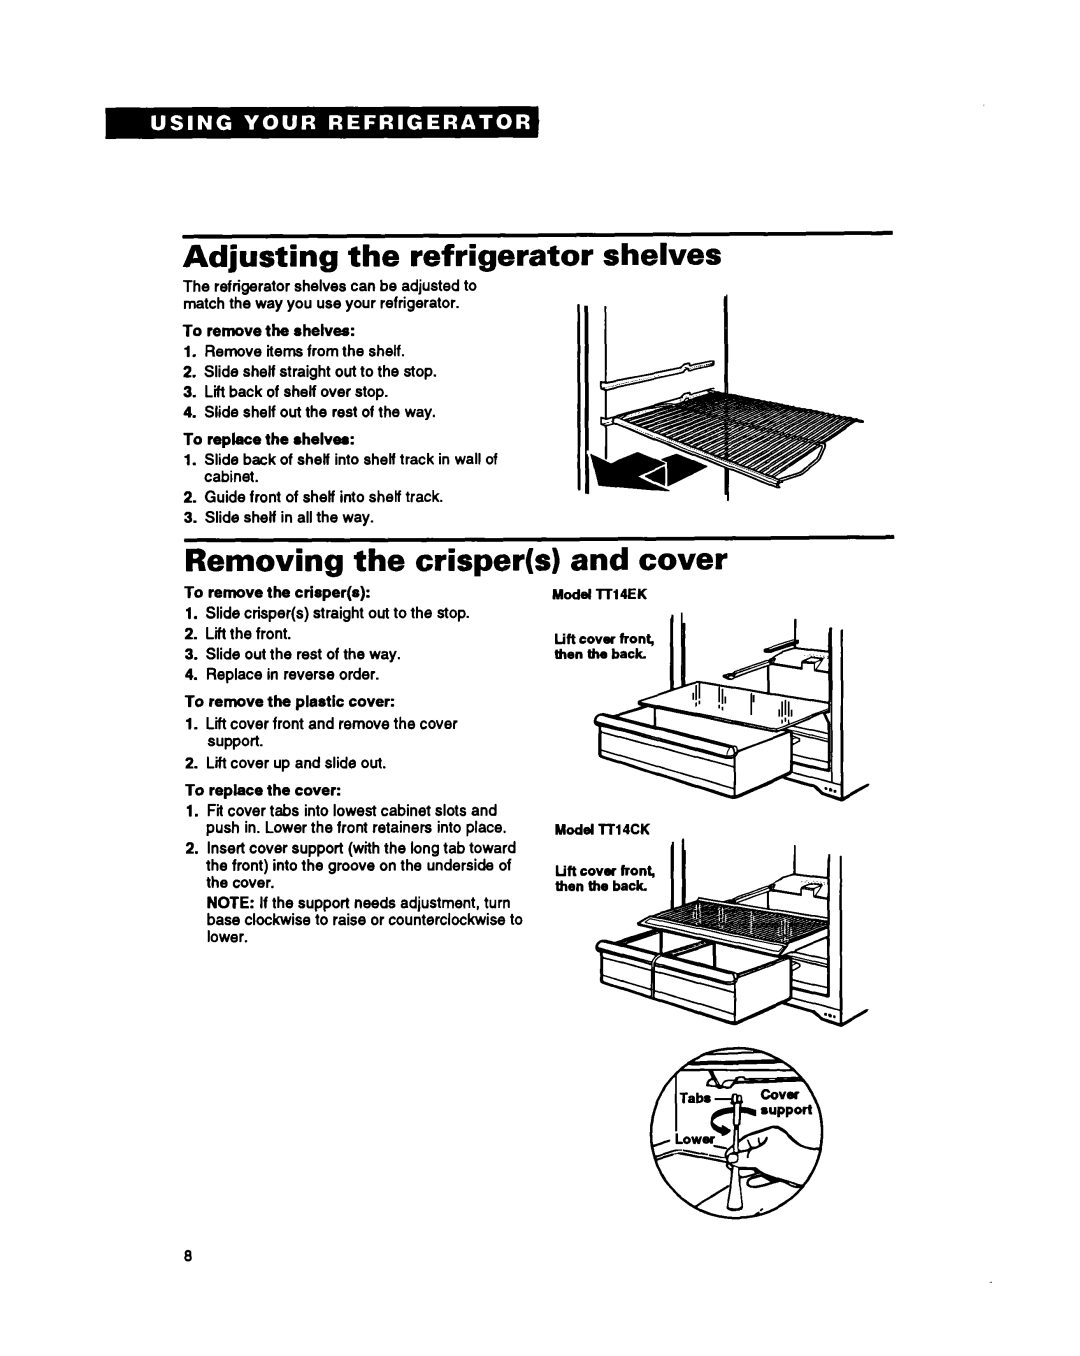 Estate TT14CK, LT14EK important safety instructions Adjusting the refrigerator shelves, Removing the crispers, and cover 